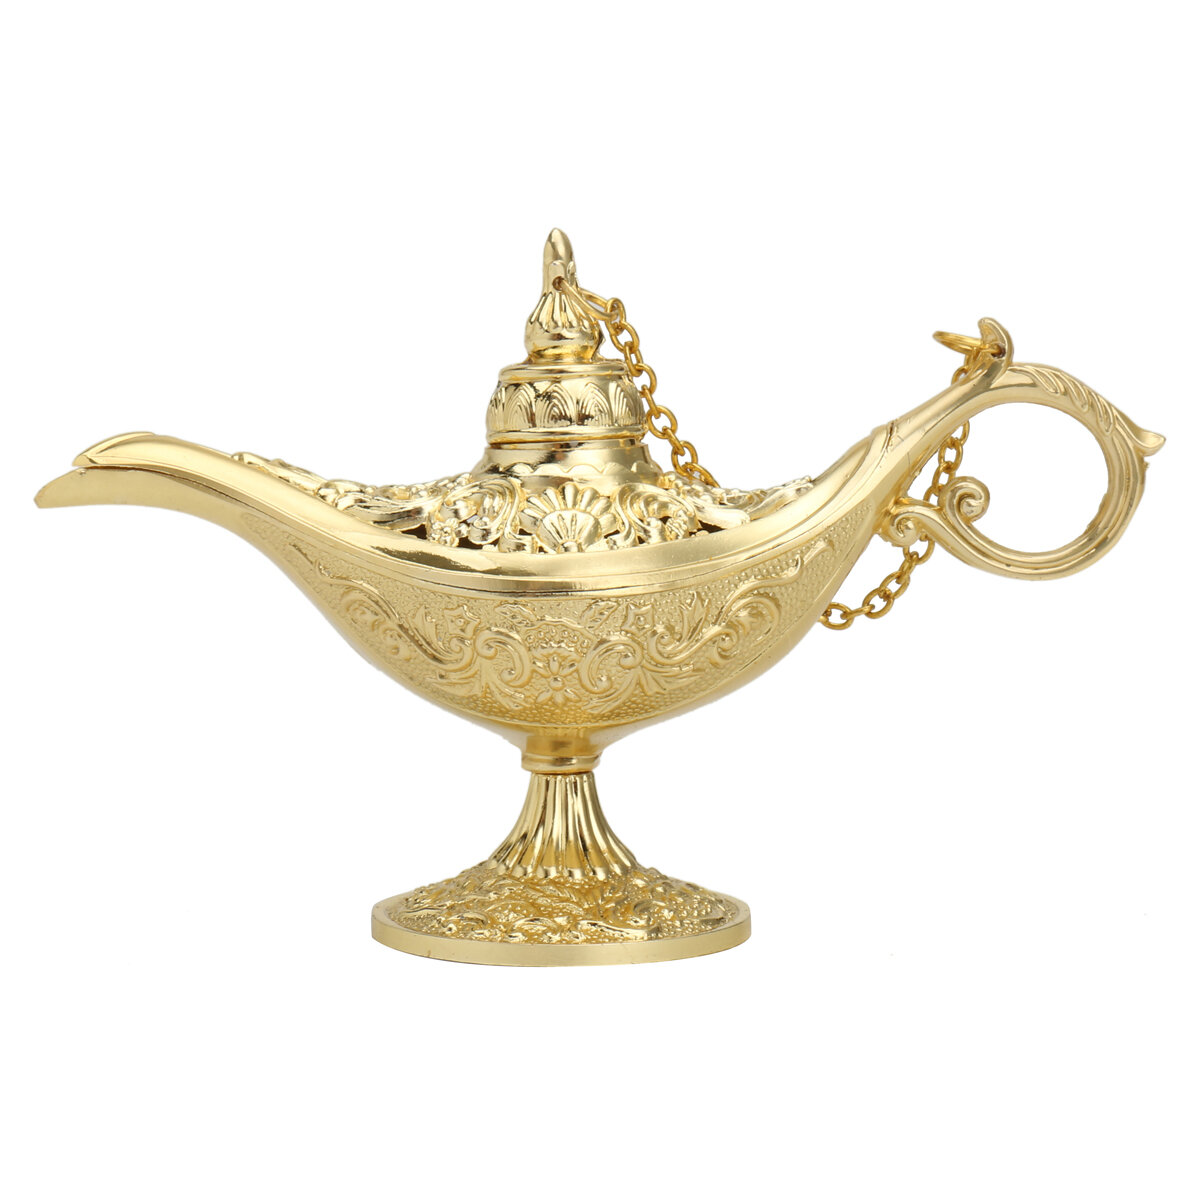 Vintage Metalen Aladin Lamp Magische Aladdins Genie Lamp Zinklegering Tafeldecoratie Classic Arabisc